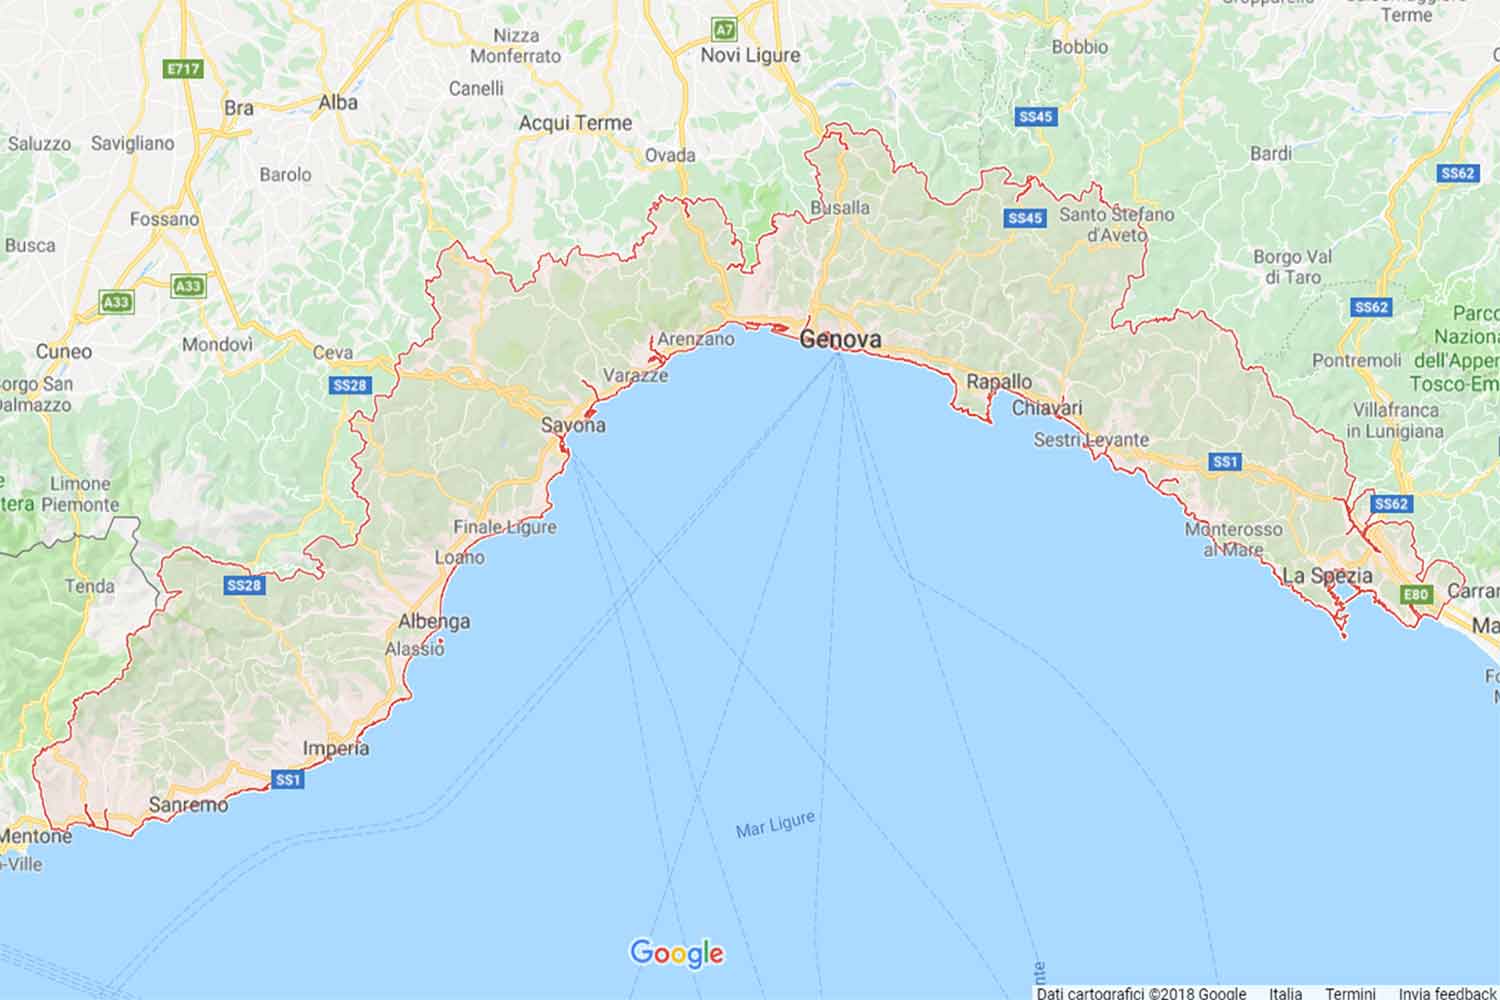 Liguria - Imperia - Montegrosso Pian Latte Preventivi Veloci google maps